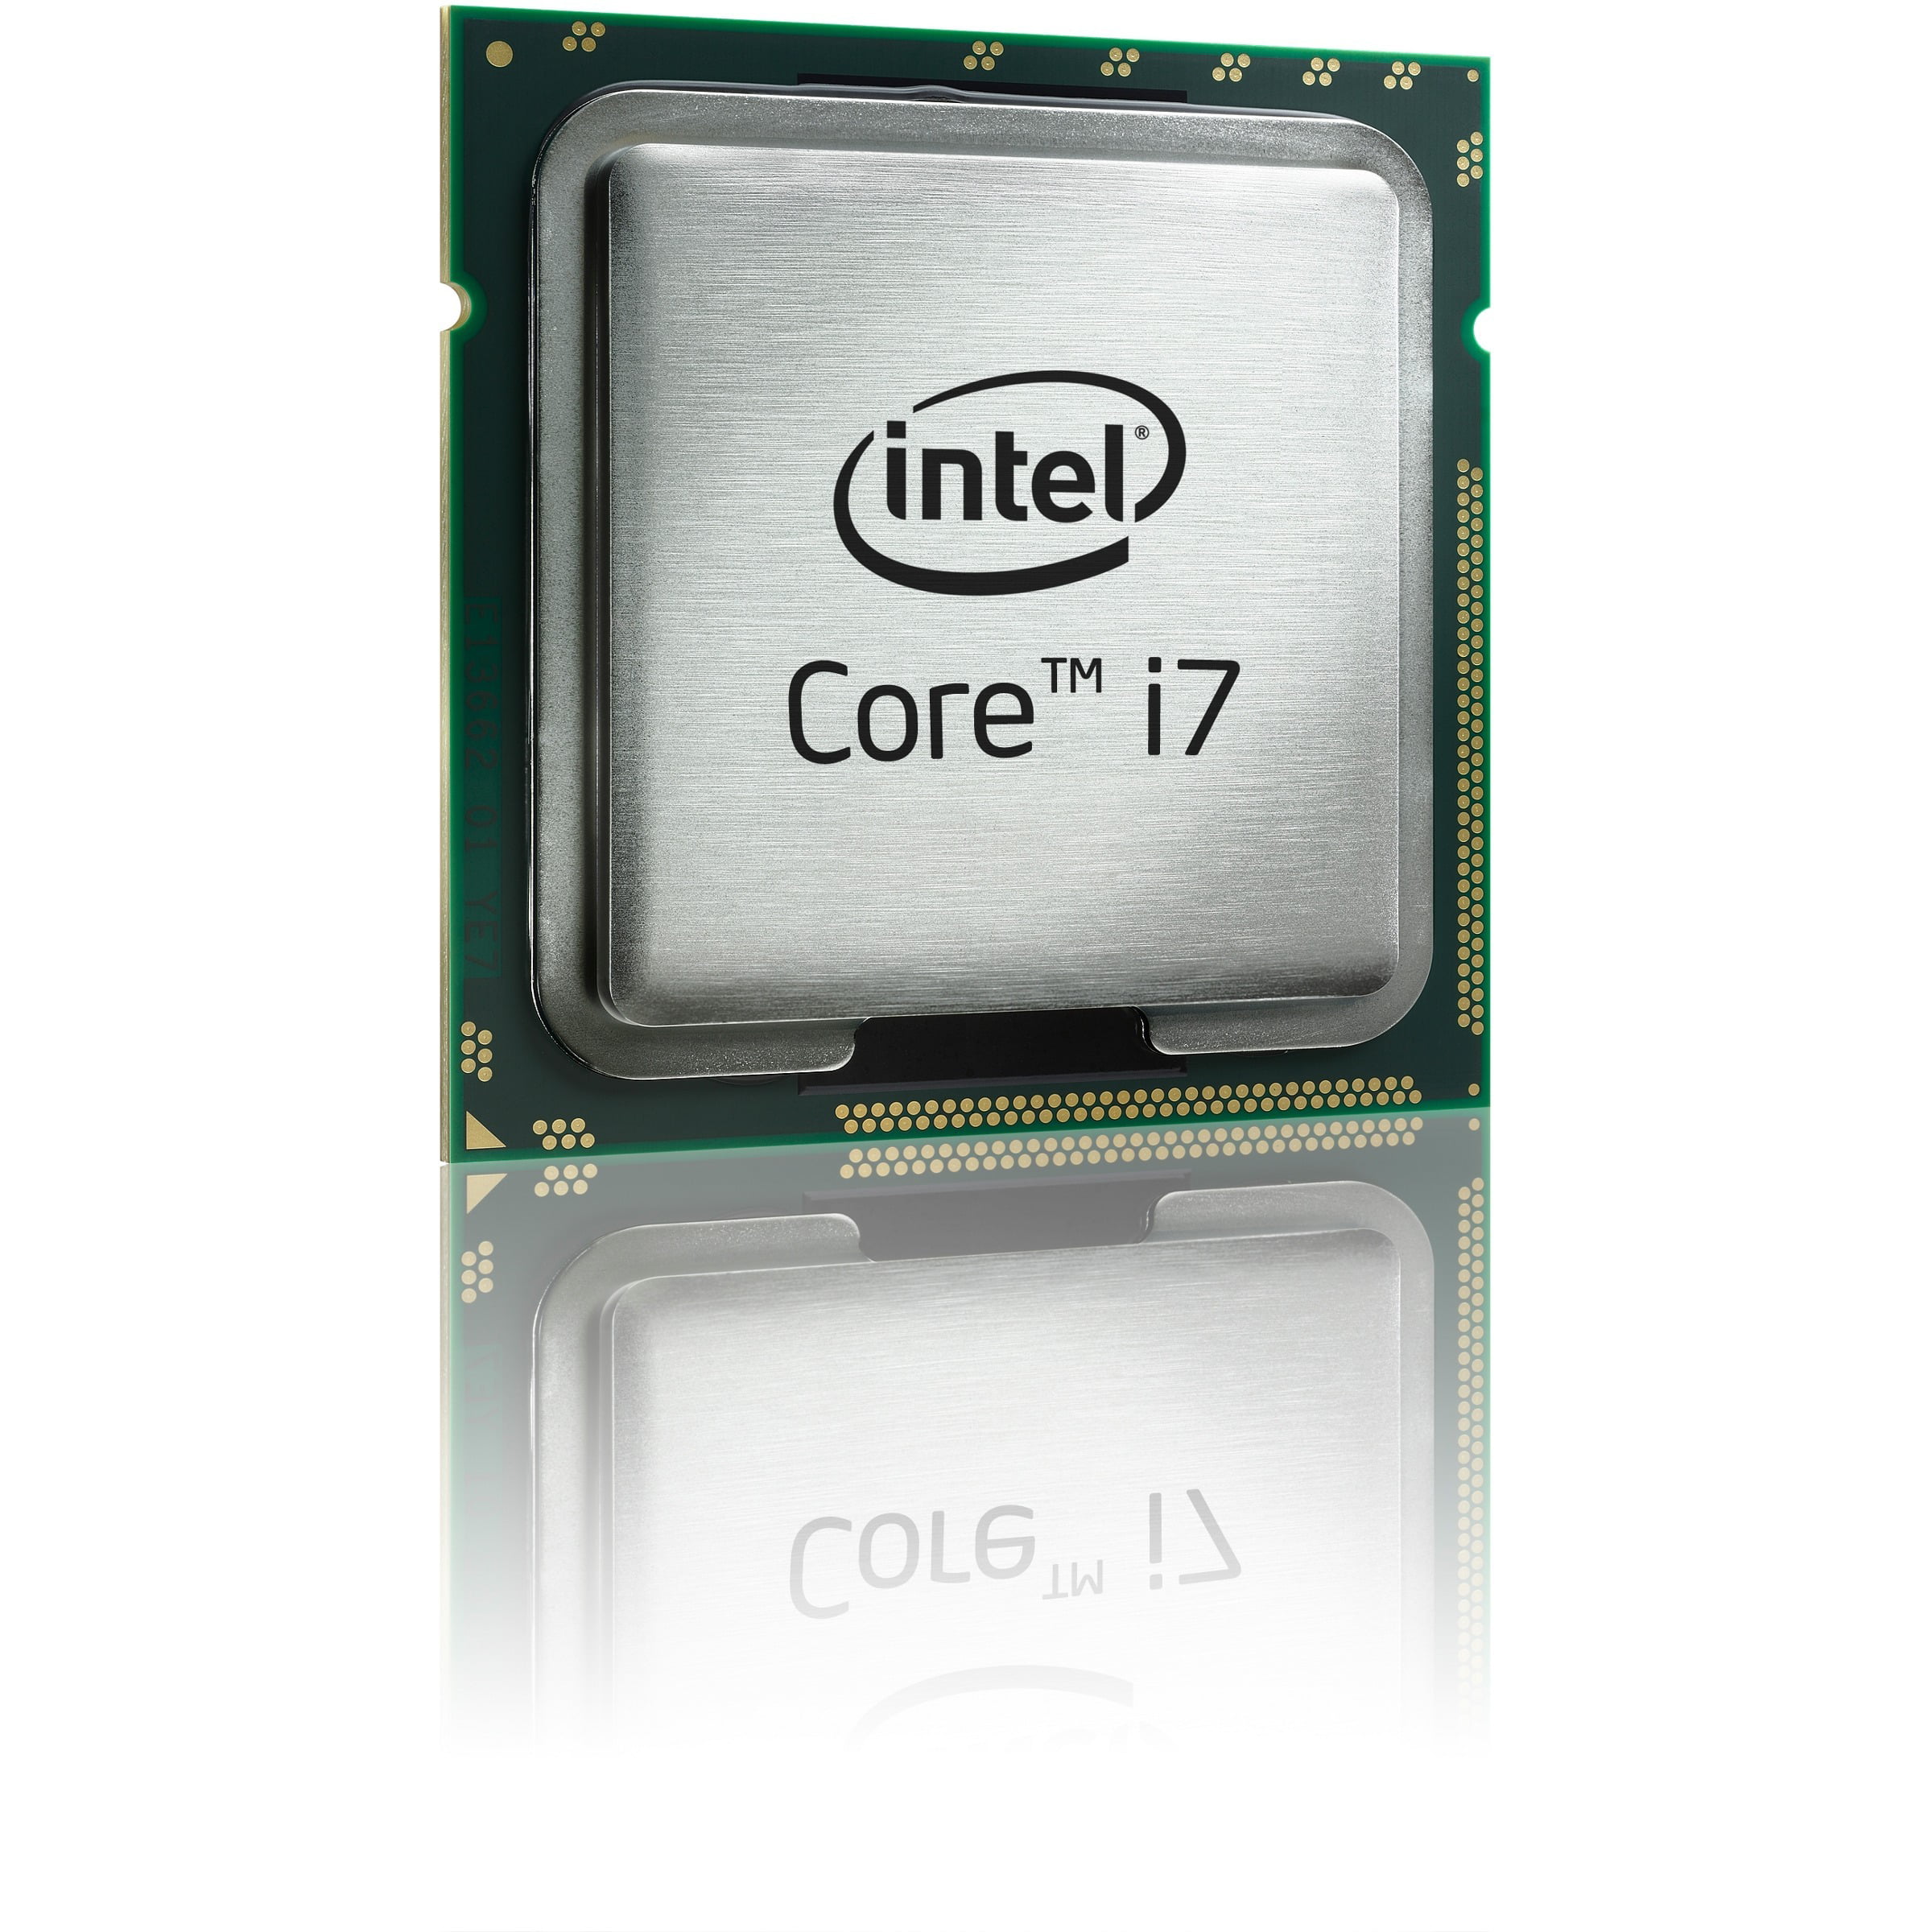 Core i7 Quad-core i7-4790 3.6GHz Desktop Processor